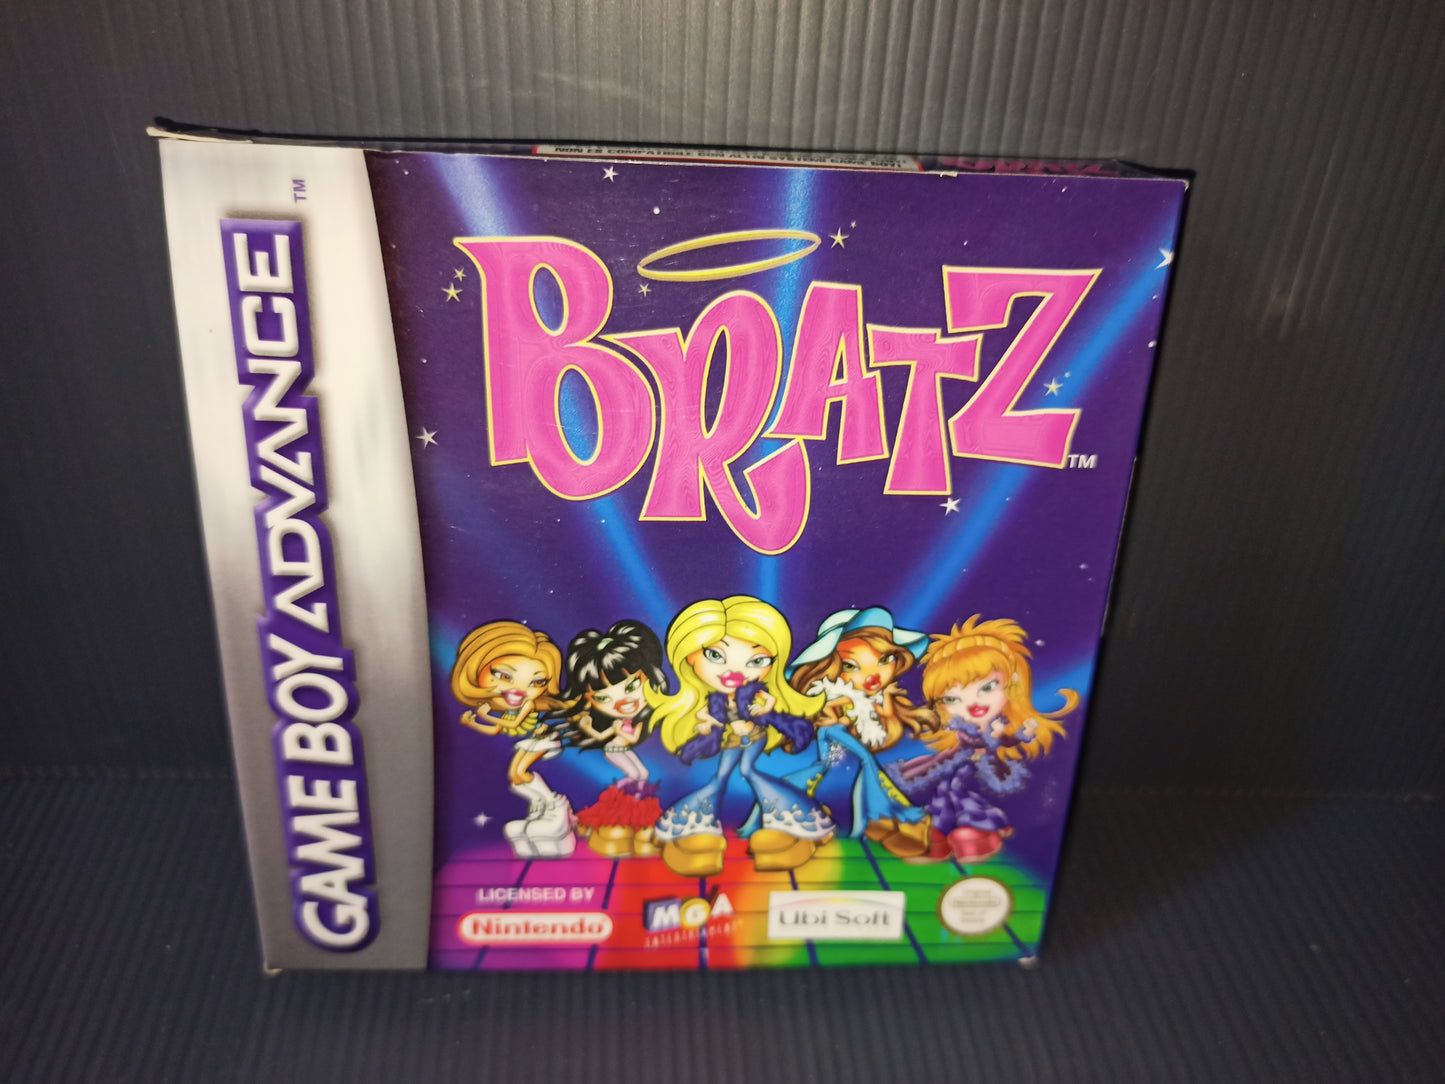 Videogioco Bratz per Game Boy Advance